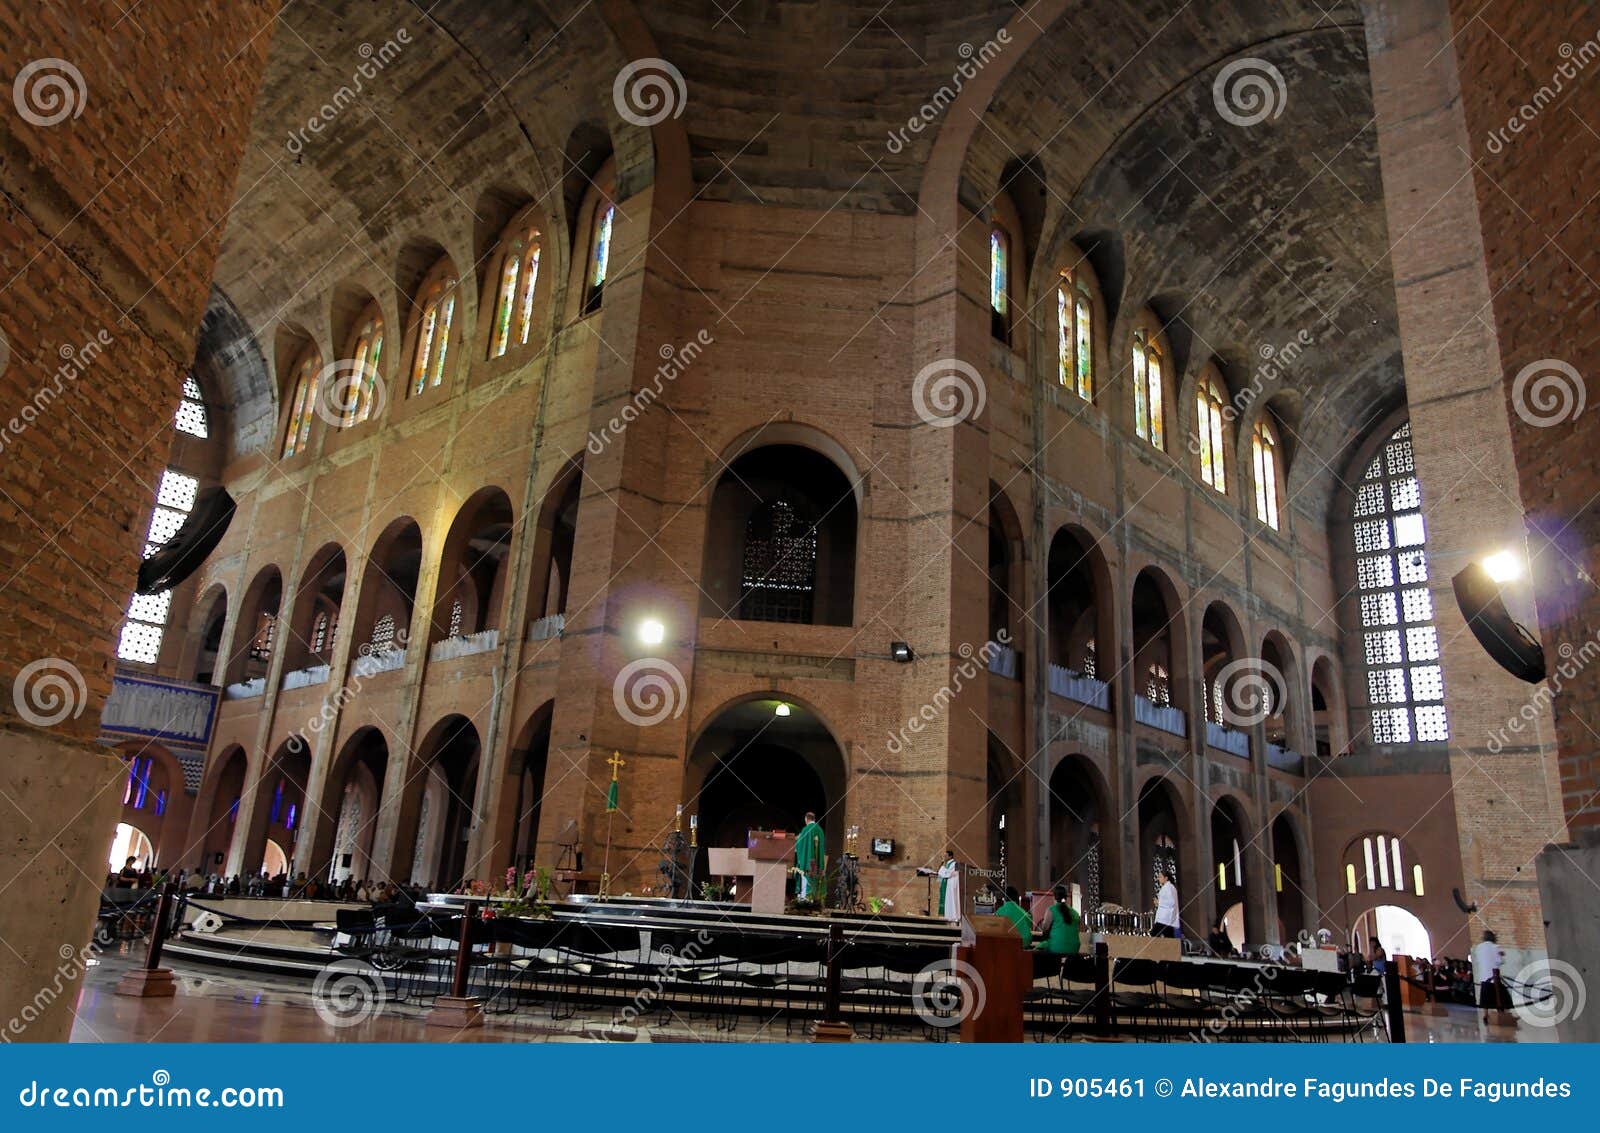 main nave basilica of aparecida